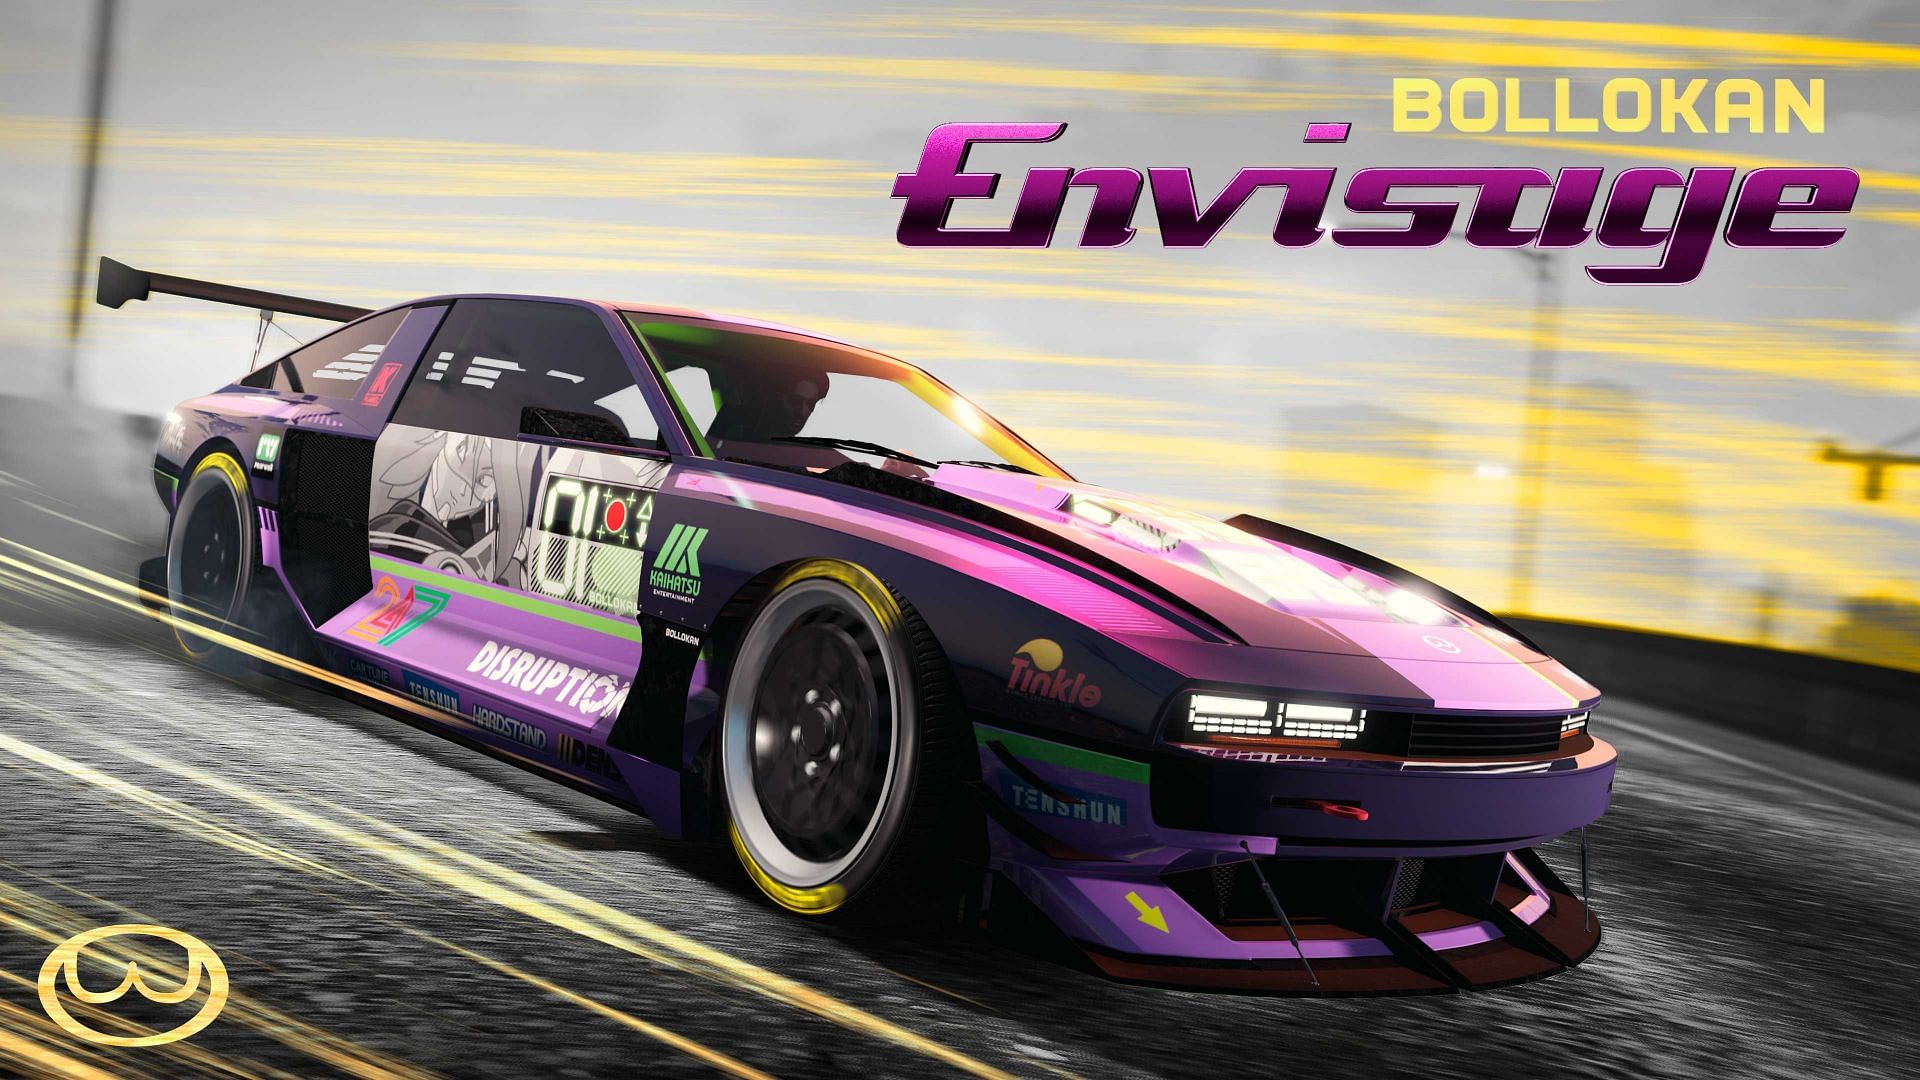 Official poster of the Bollokan Envisage (Image via Rockstar Games)